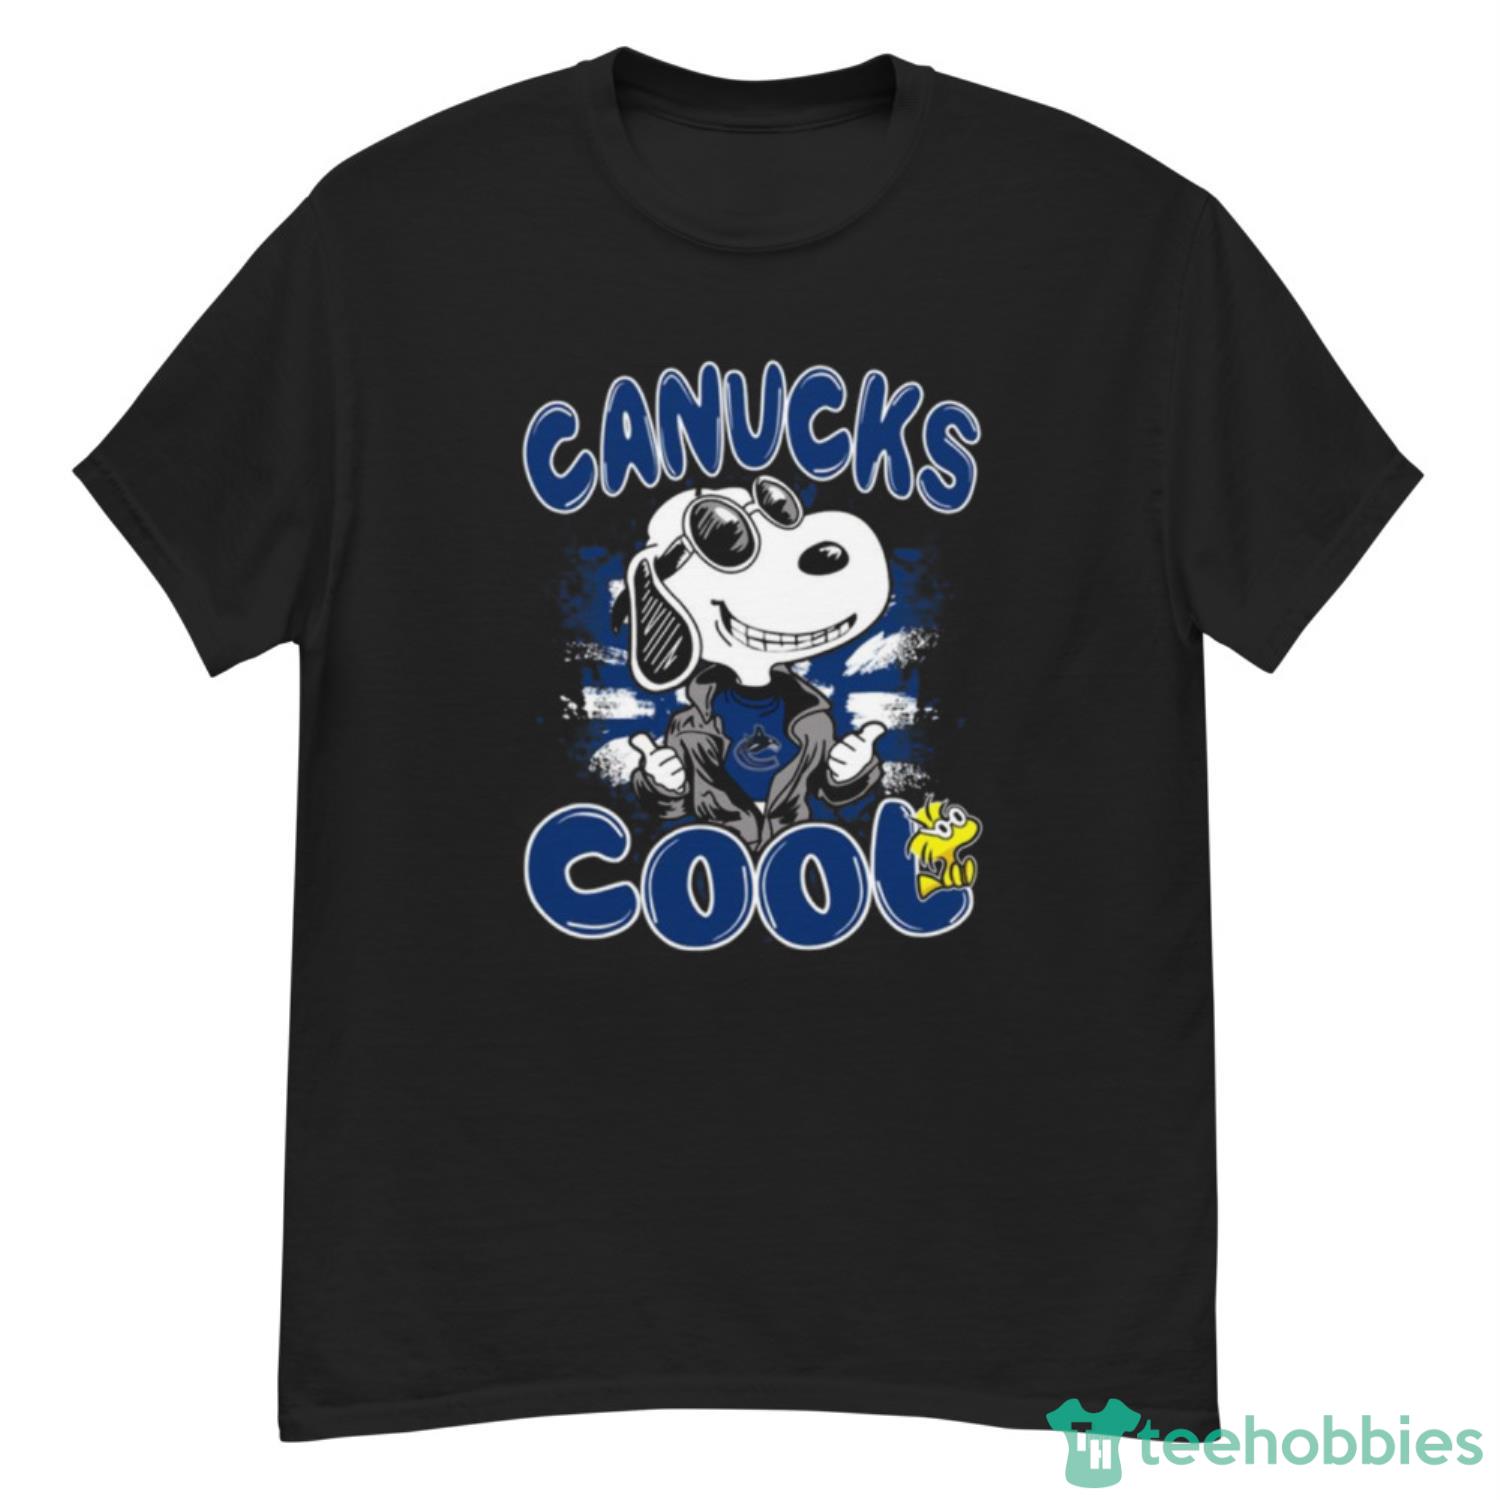 NHL Hockey Vancouver Canucks Cool Snoopy Shirt T Shirt - G500 Men’s Classic T-Shirt